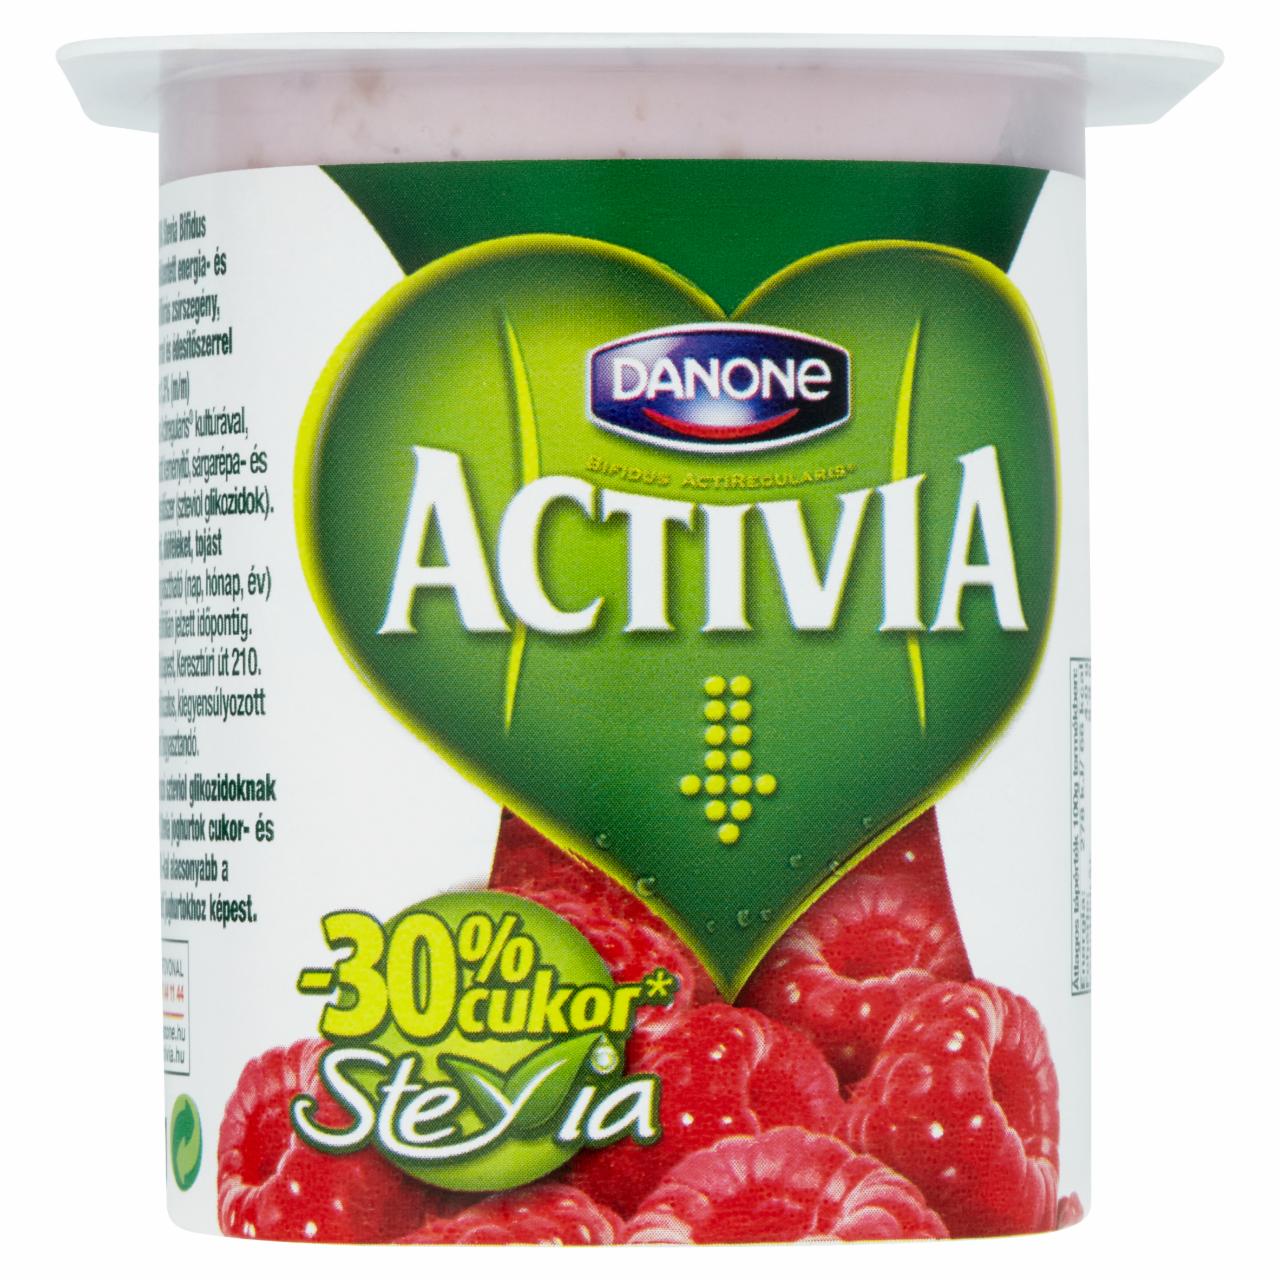 Képek - Danone Activia Stevia málnás joghurt 125 g